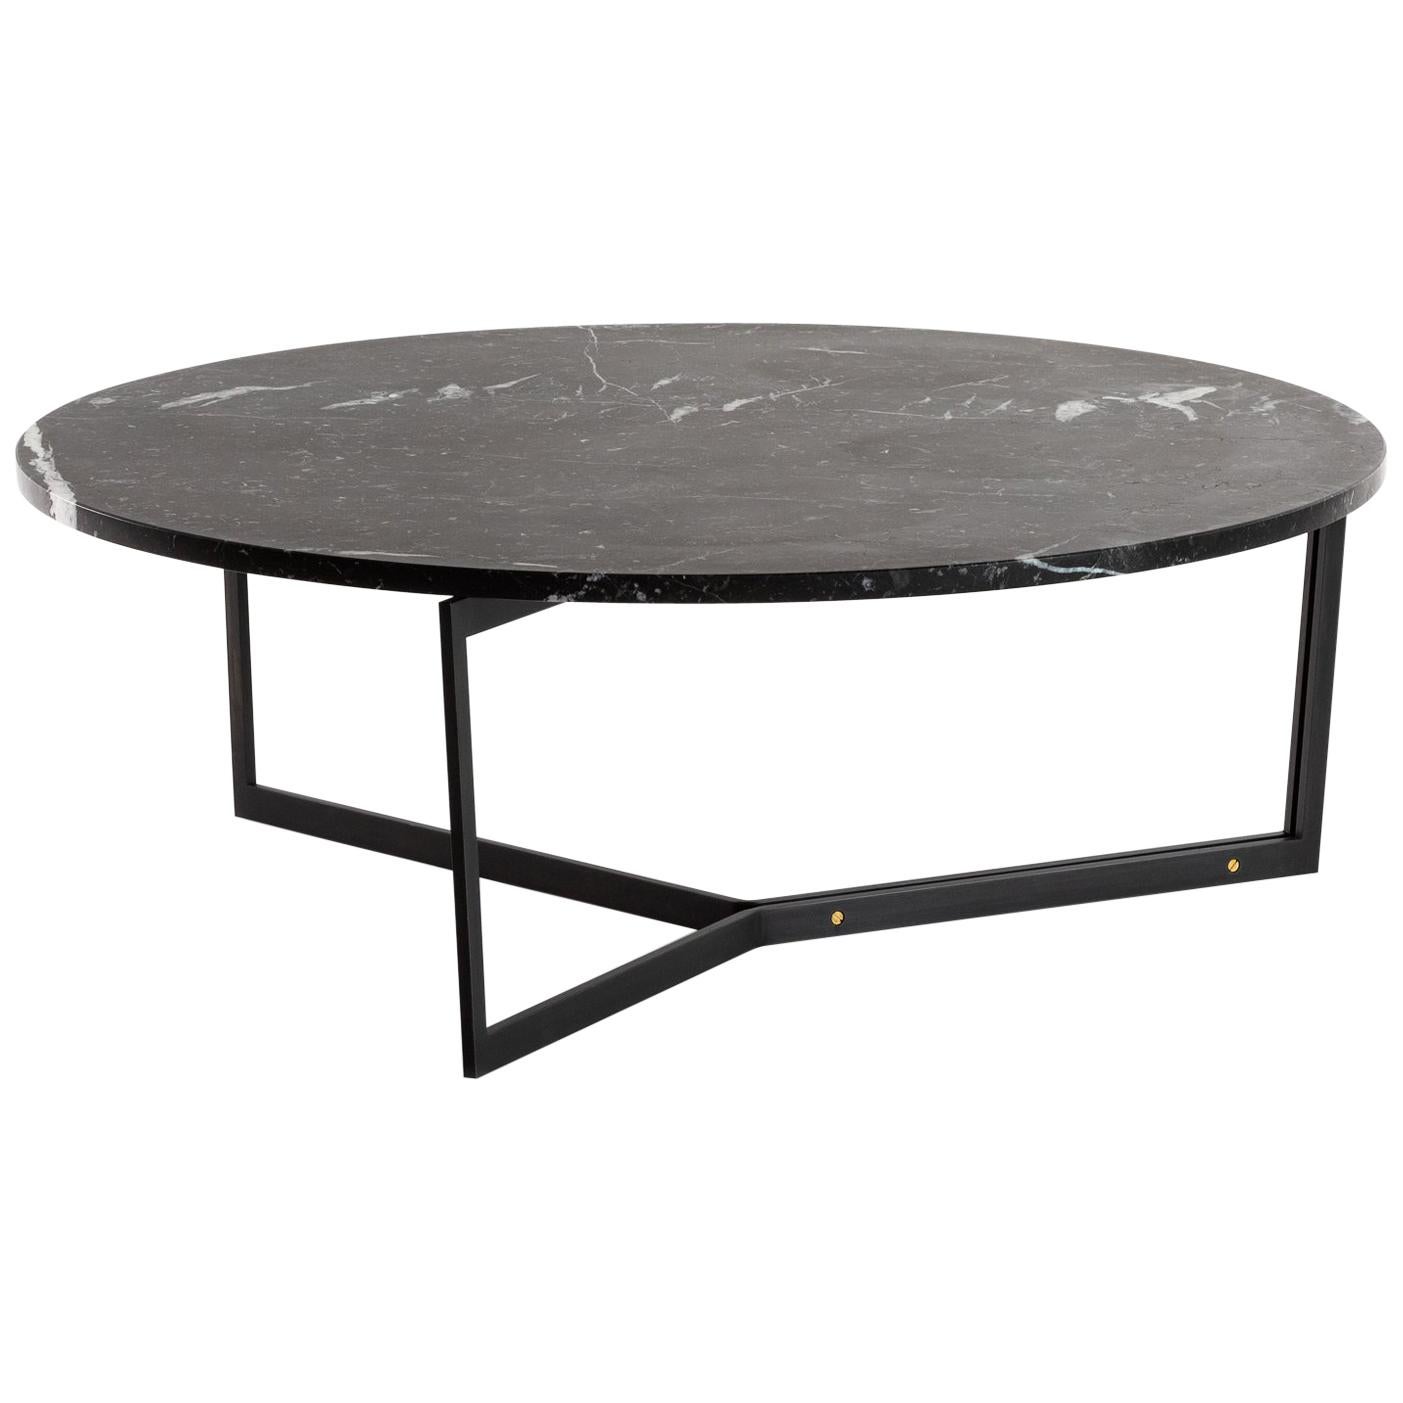 Table basse ronde AT14 avec base en acier noirci et plateau en marbre